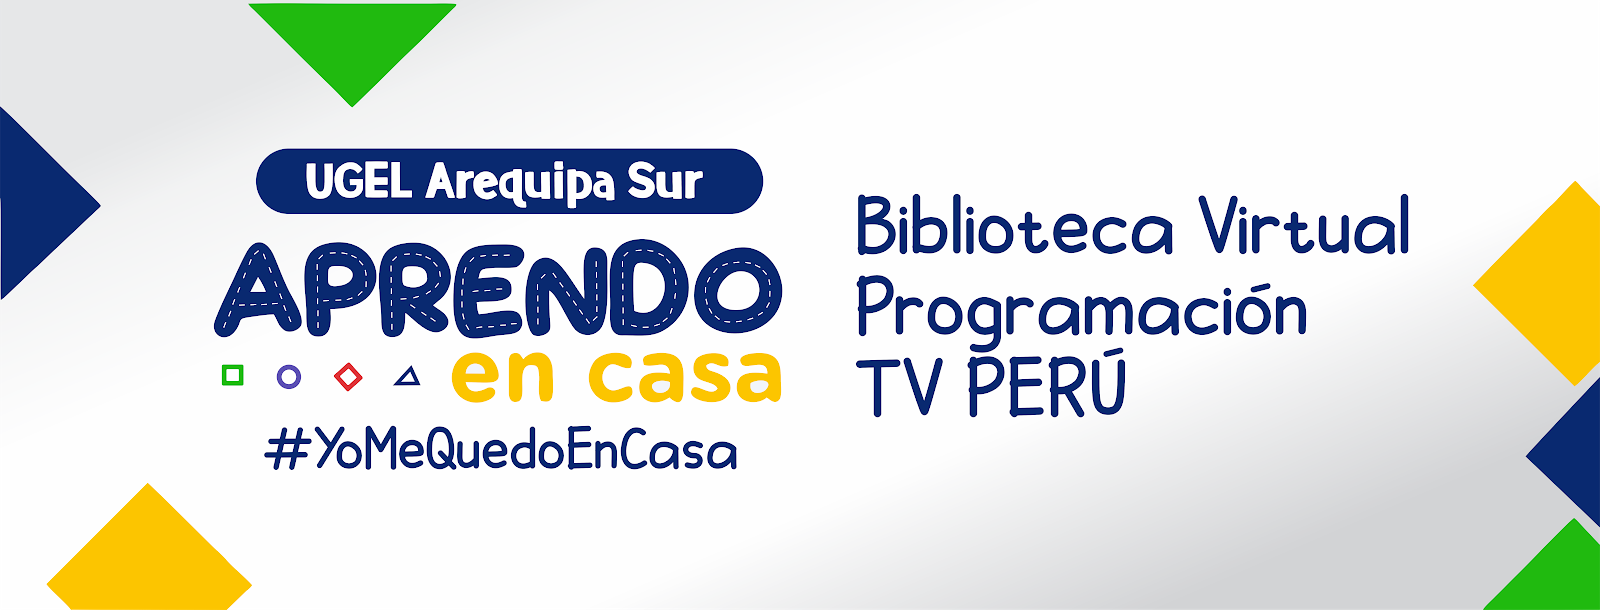 BIBLIOTECA VIRTUAL TV PERÚ - APRENDO EN CASA - UGEL AREQUIPA SUR